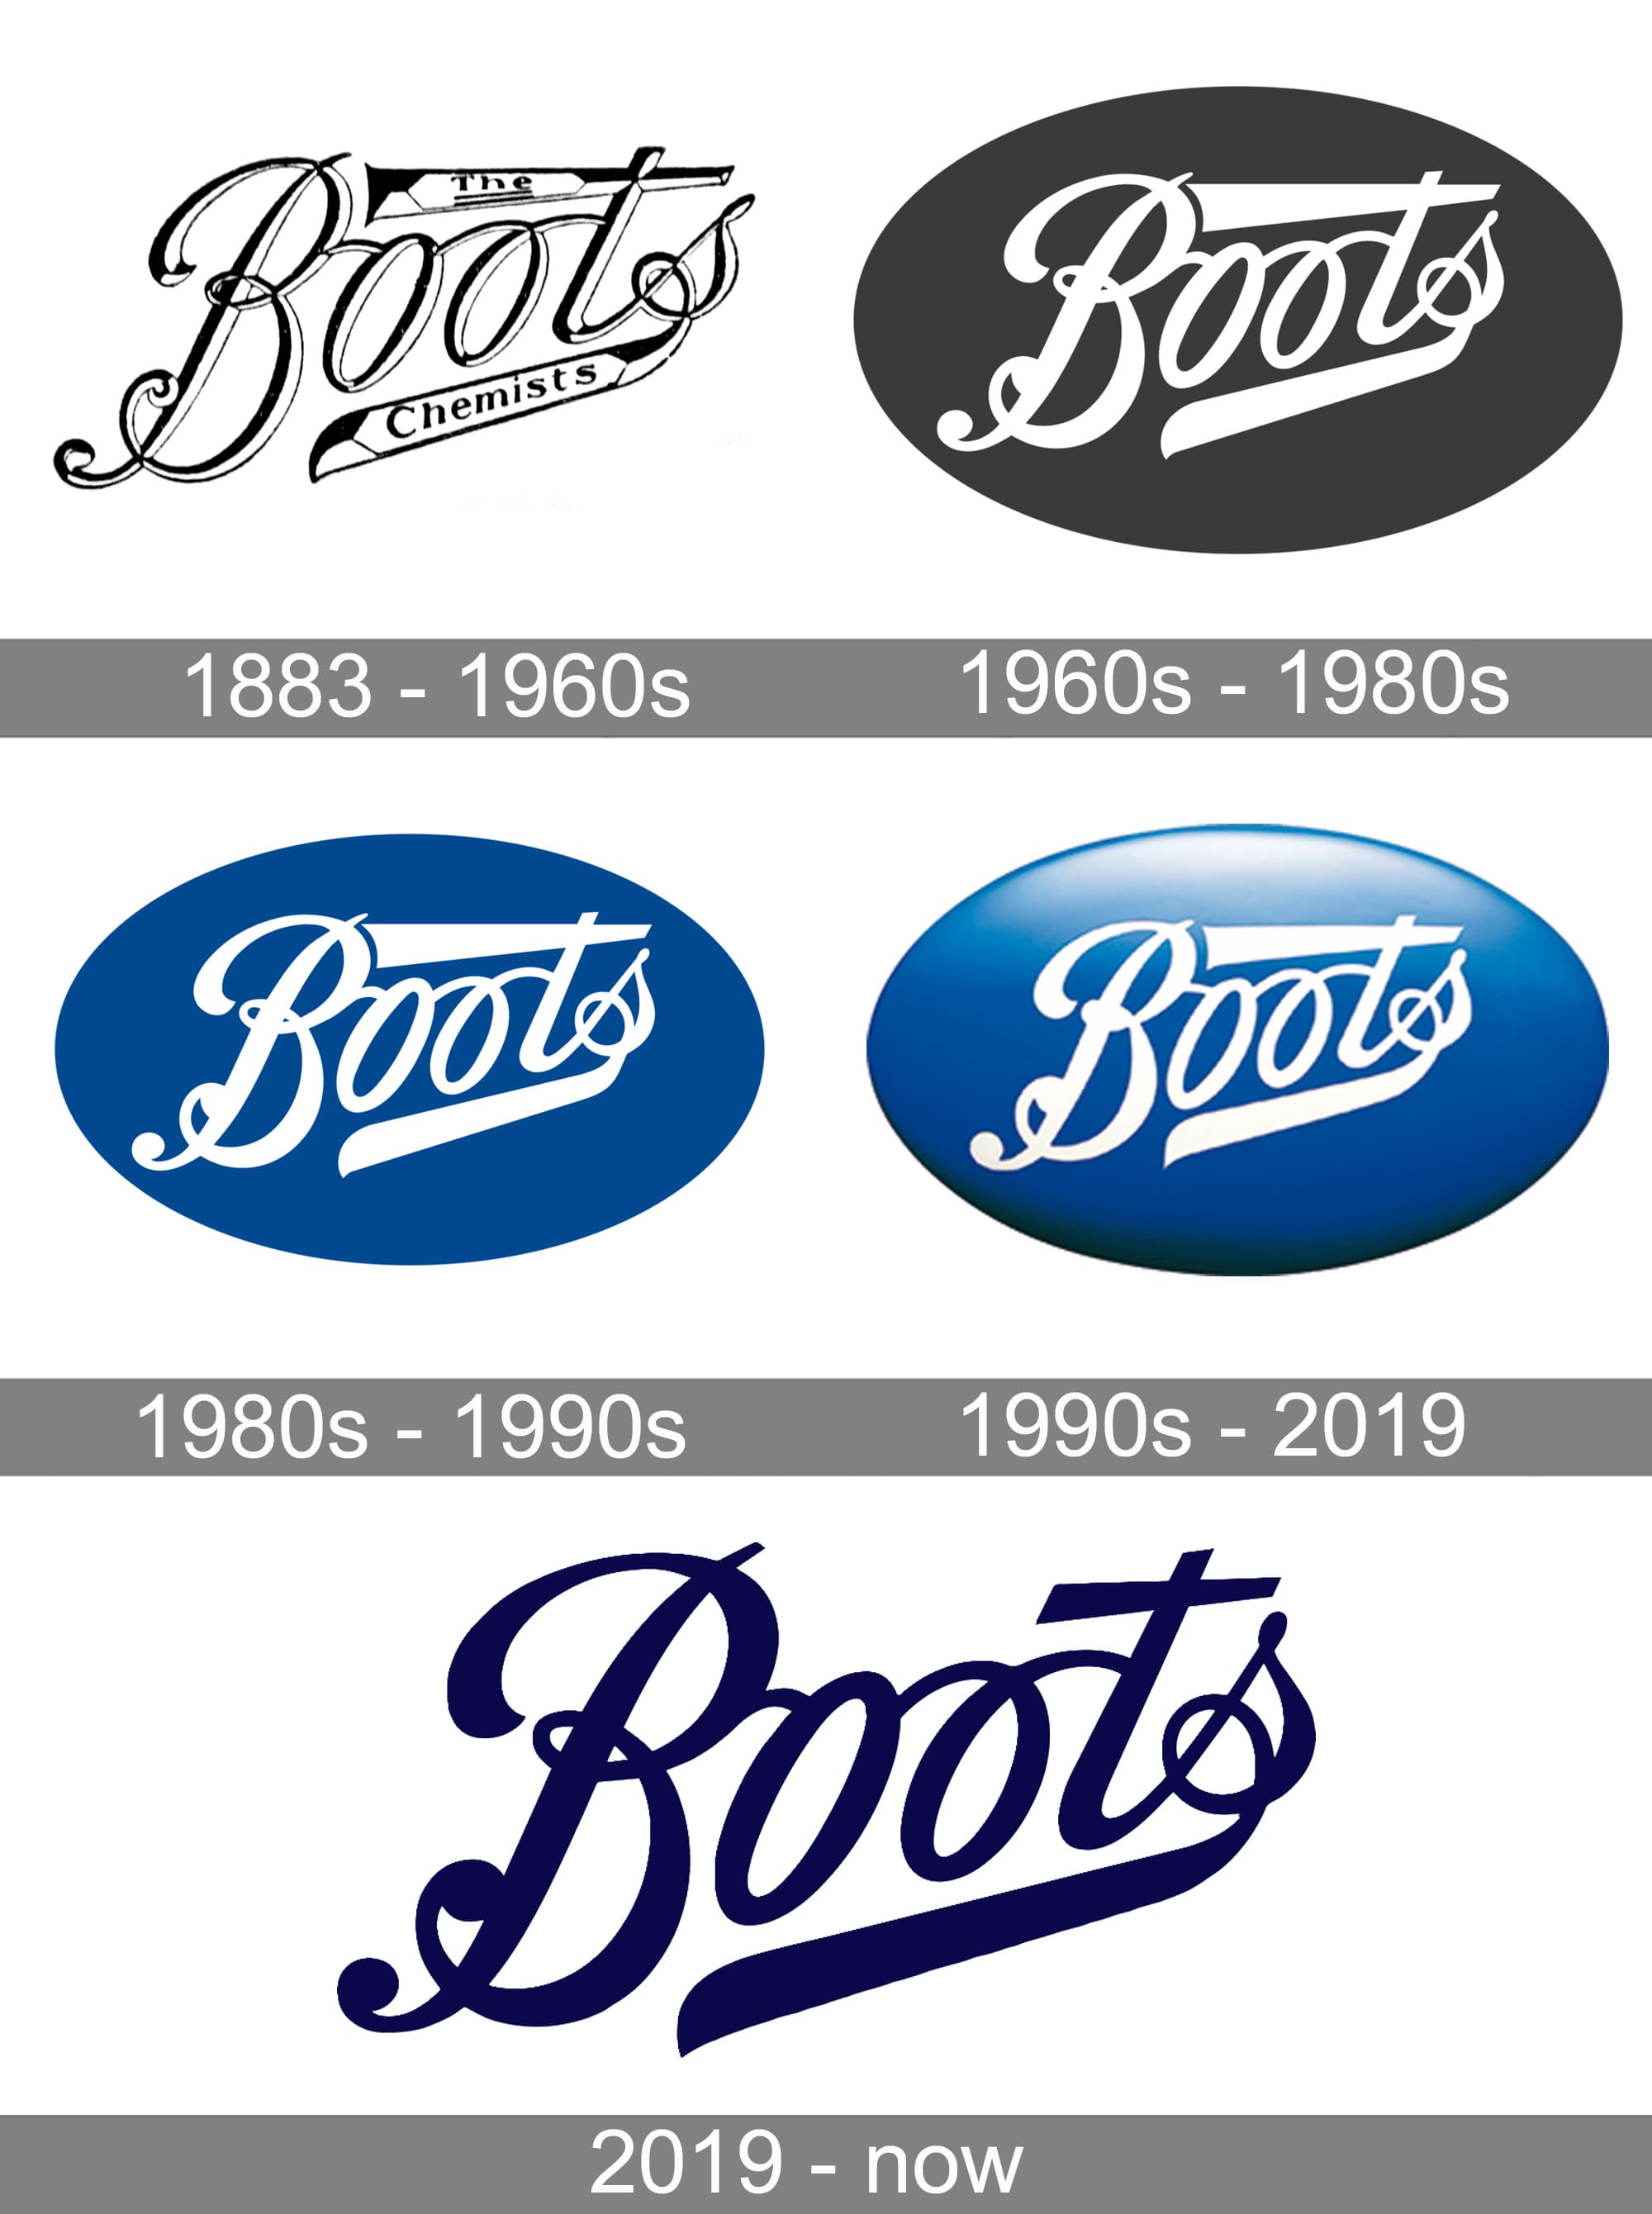 1960s logos